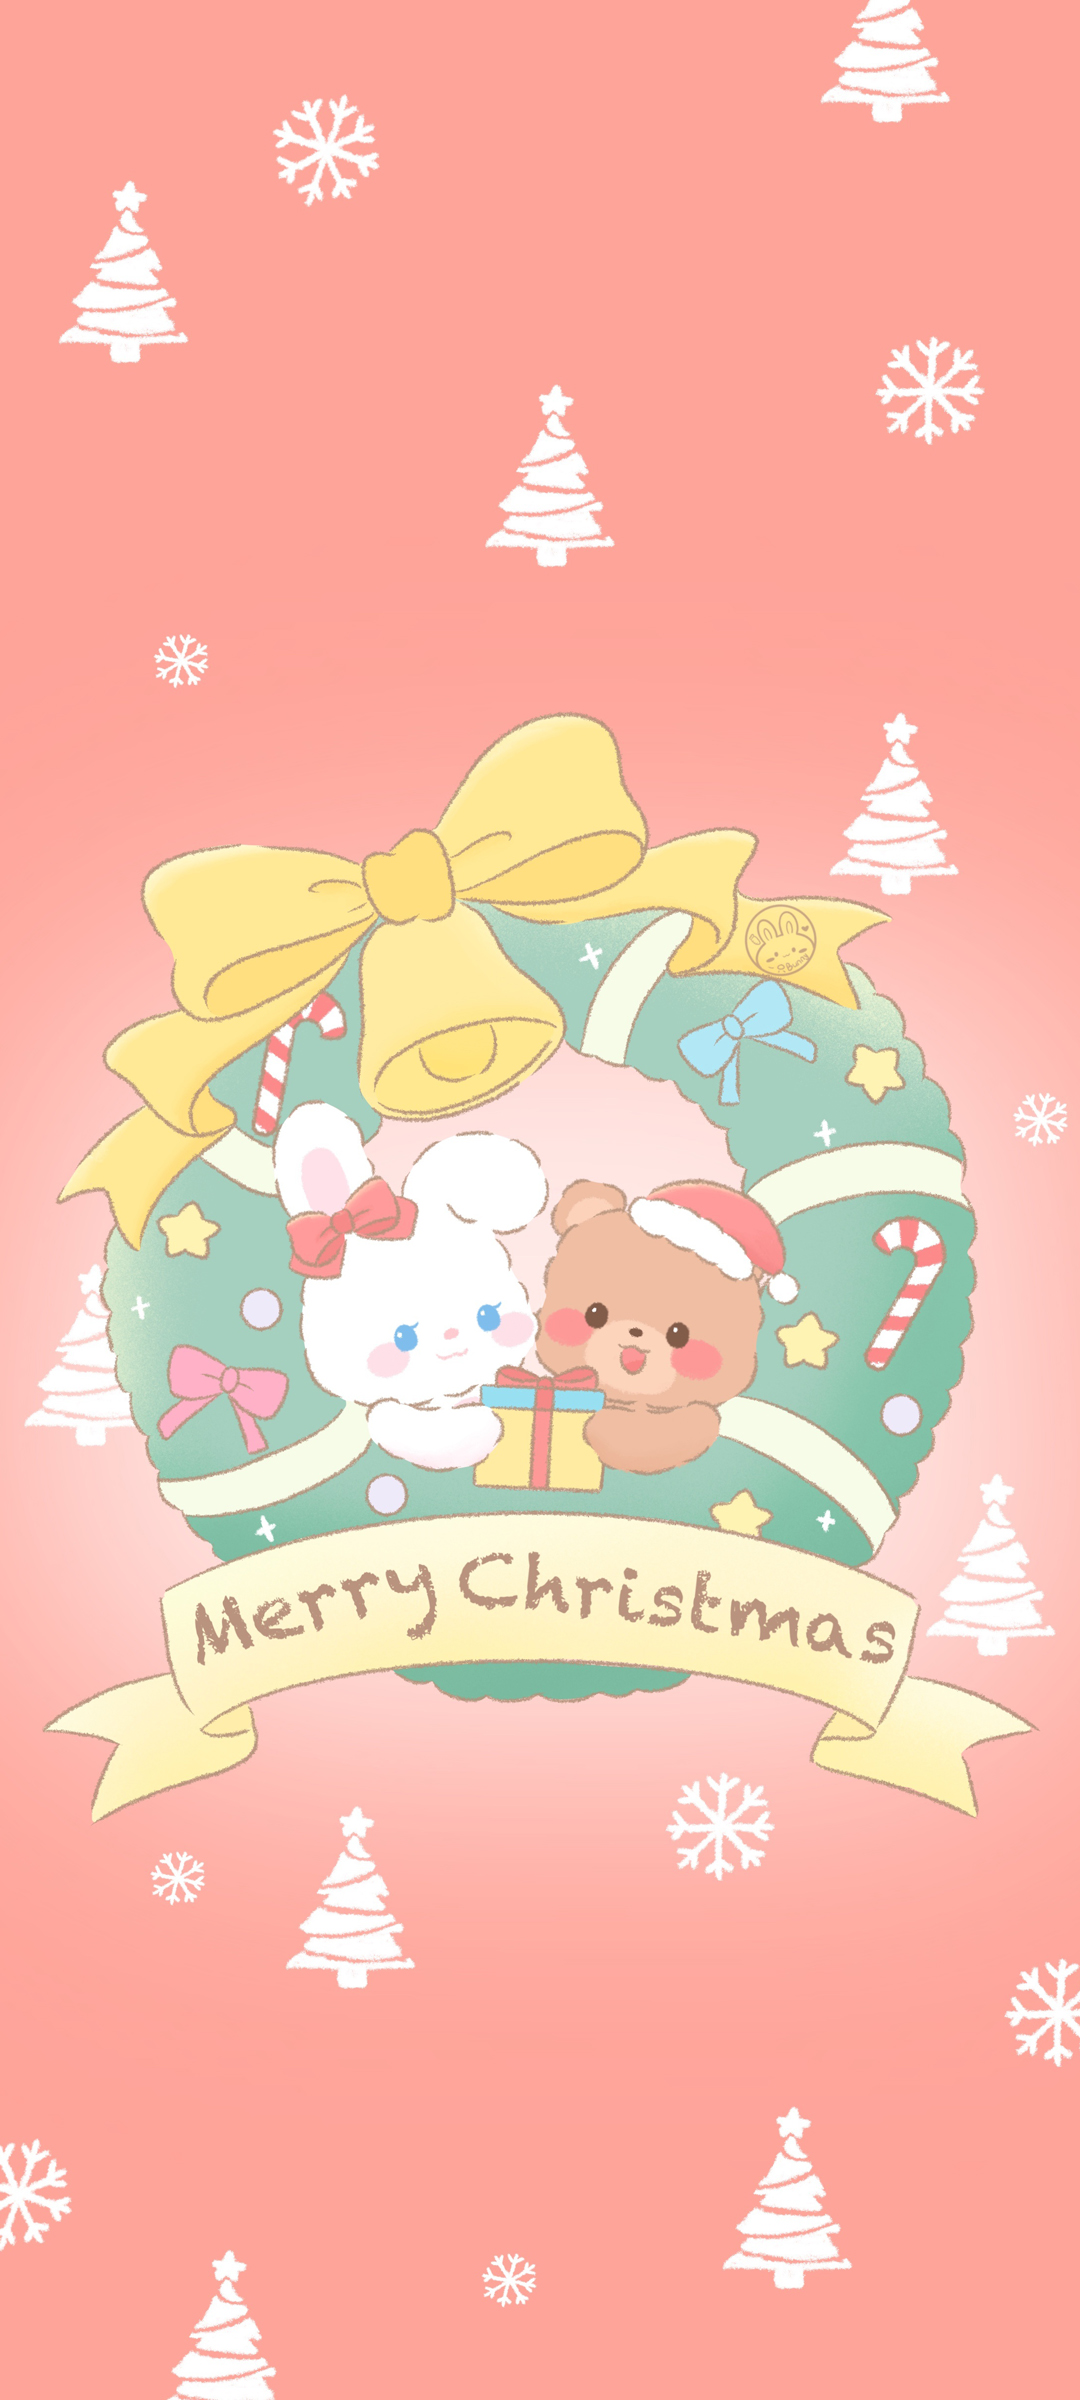 圣诞节可爱礼物 卡通  手机壁纸